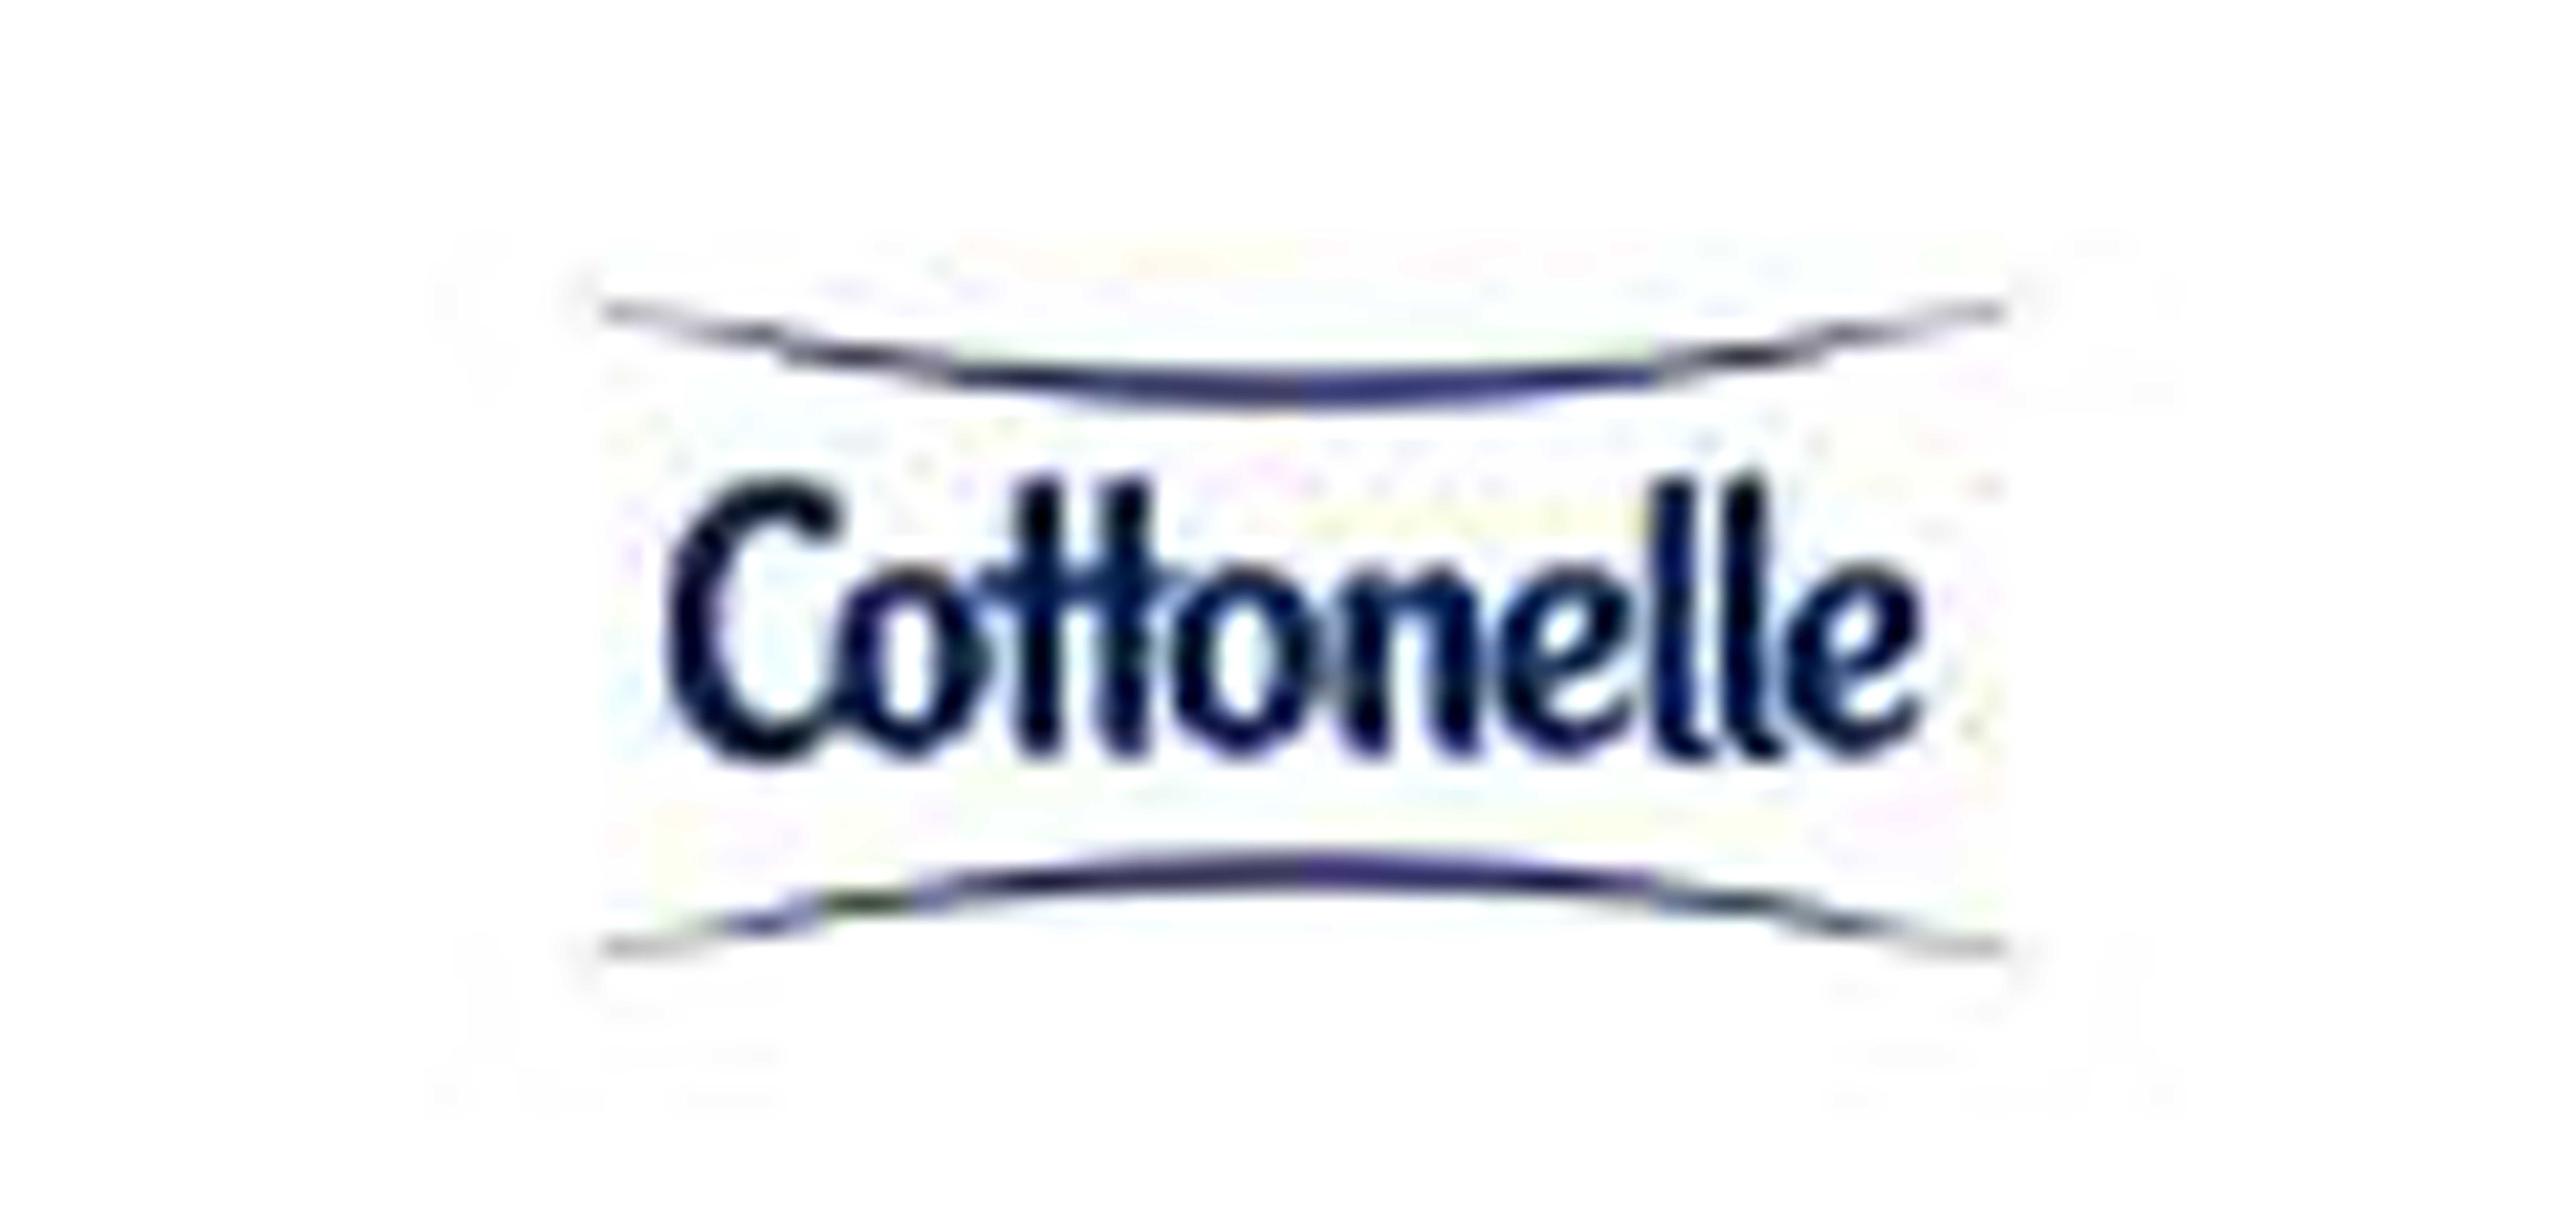 Cottonelle是什么牌子_Cottonelle品牌怎么样?